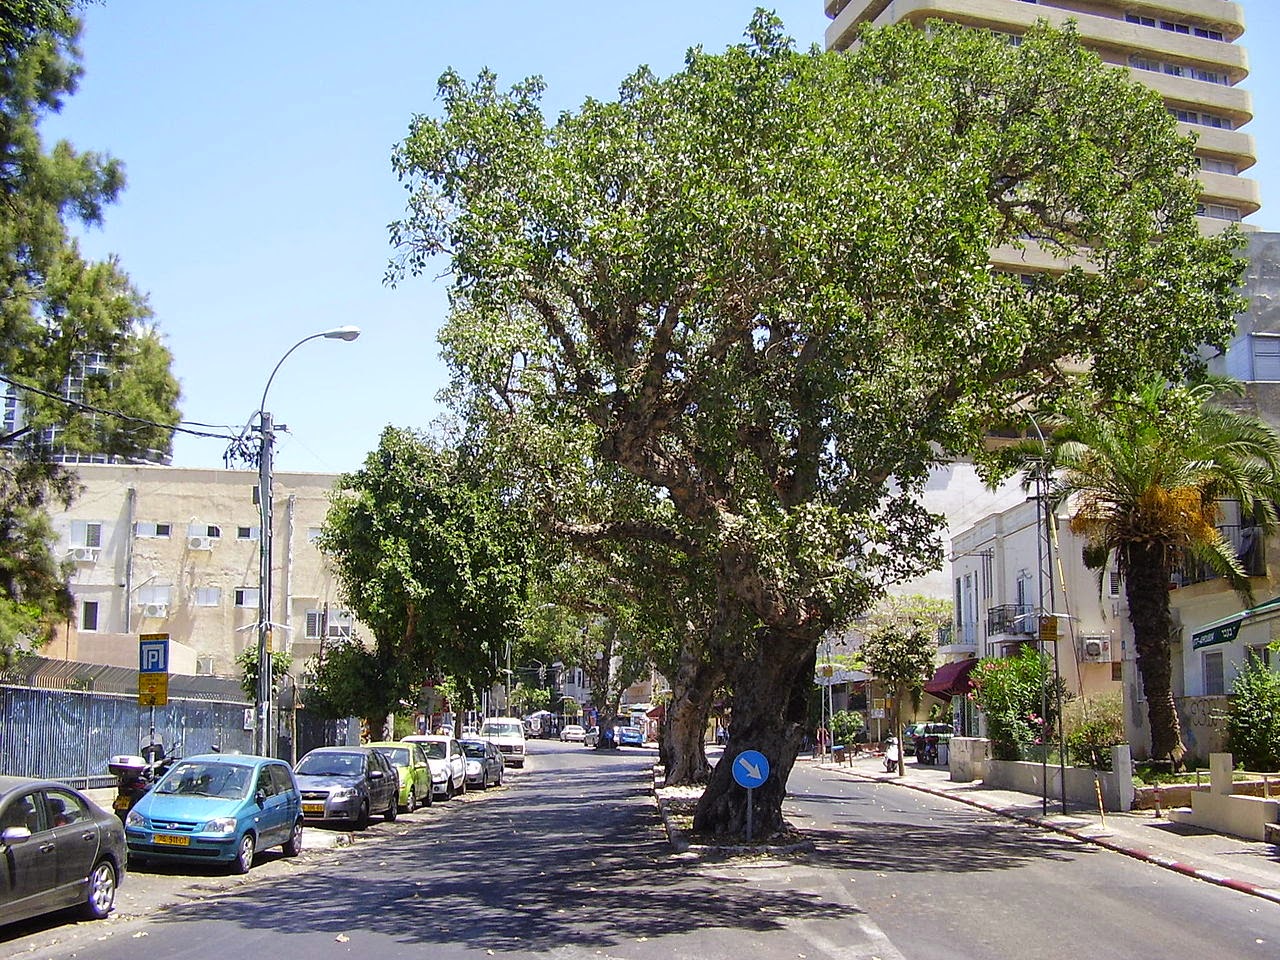 1280px-PikiWiki_Israel_8308_sycamore_trees_in_tel-aviv.jpg